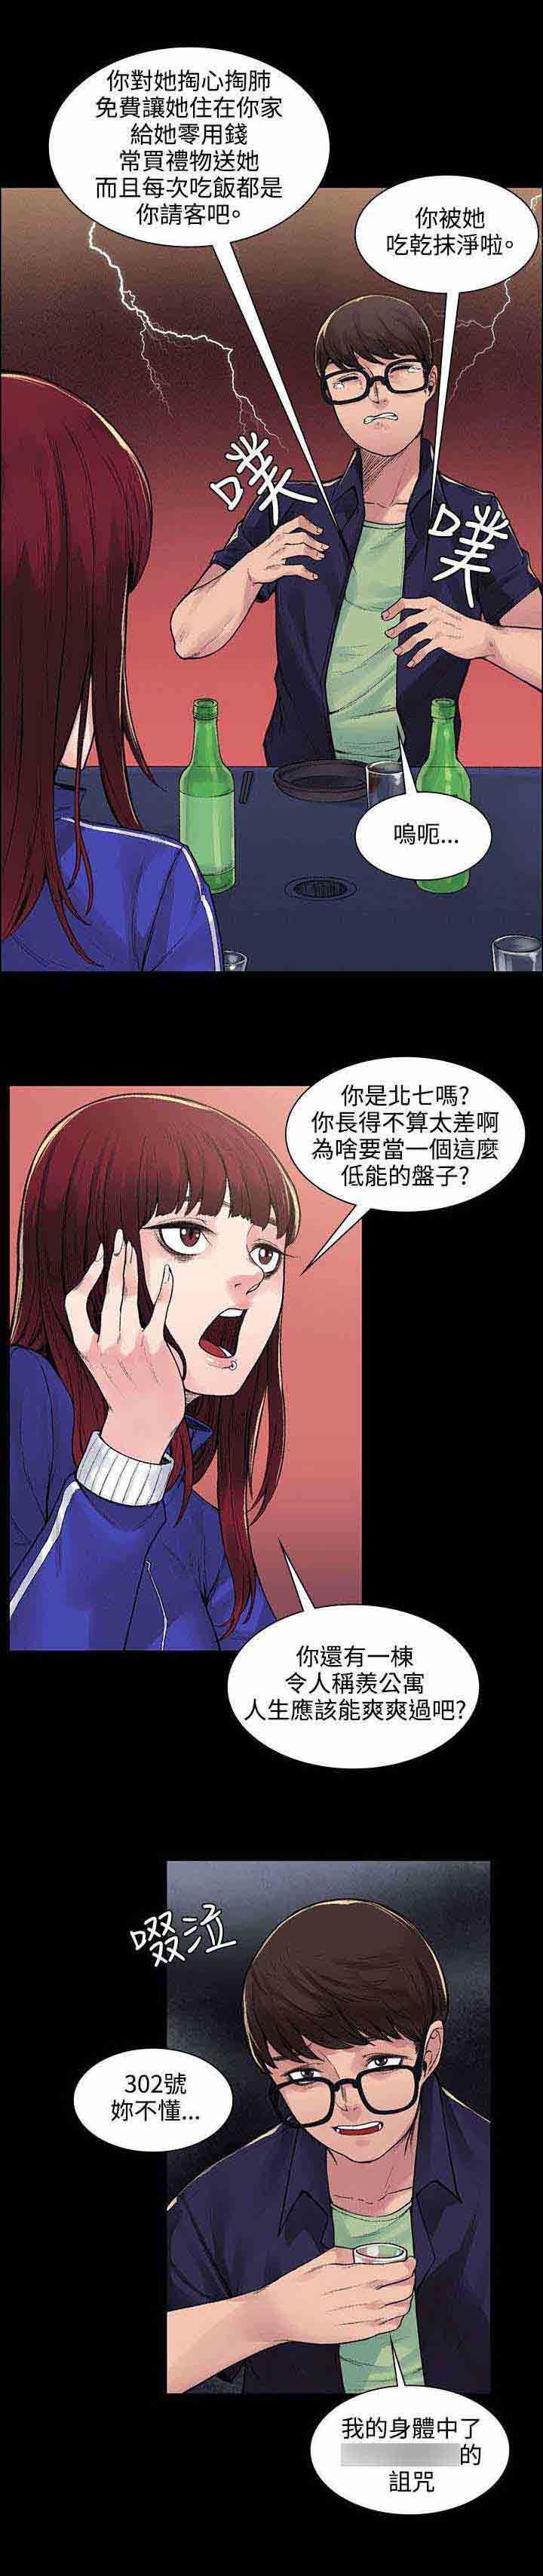 韩国污漫画 甜蜜的香氣 第12话诅咒 6